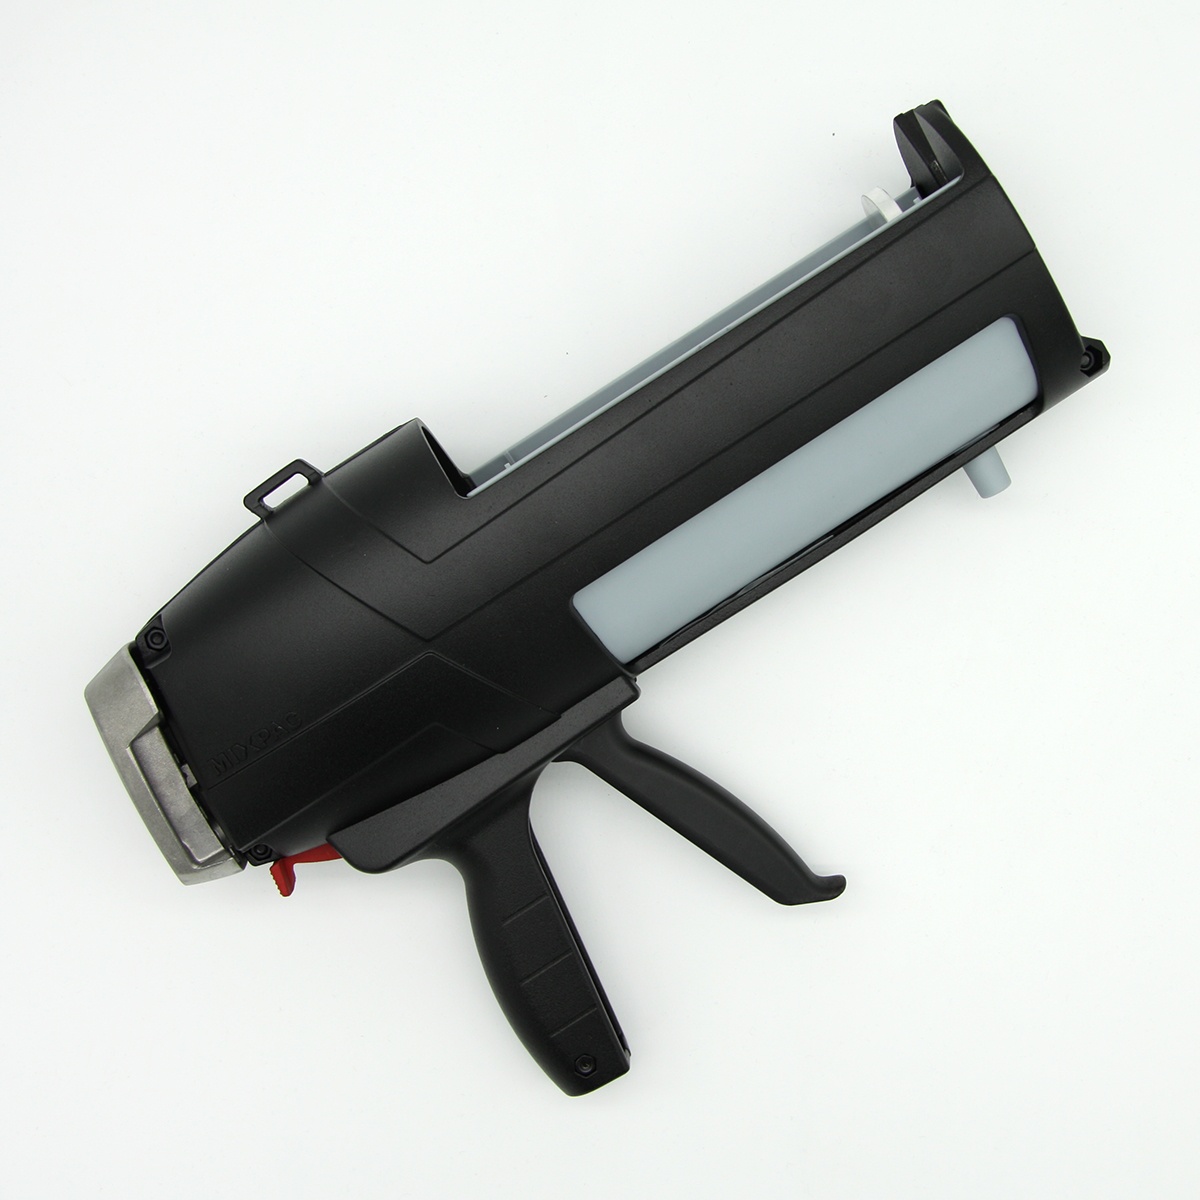 Dispensing gun for ORATEX epoxy resin adhesive